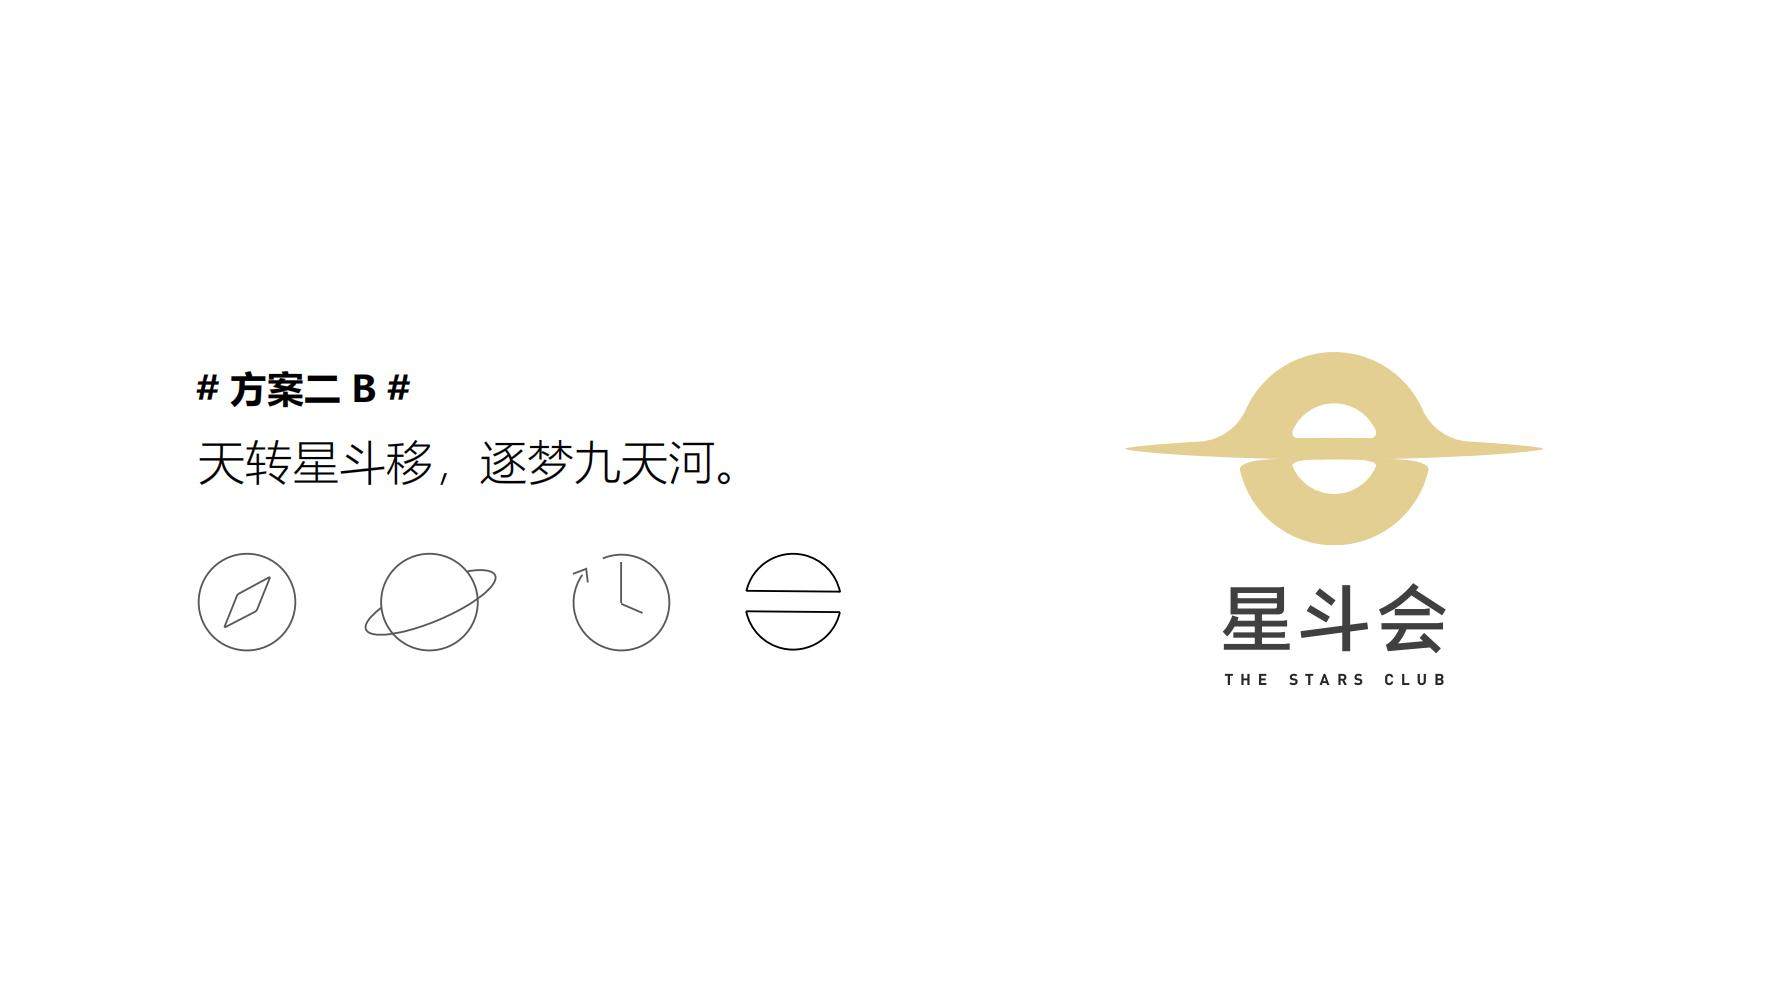 【夺幕 SLIDESIGN】星河控股集团品牌设计方案_59.jpg